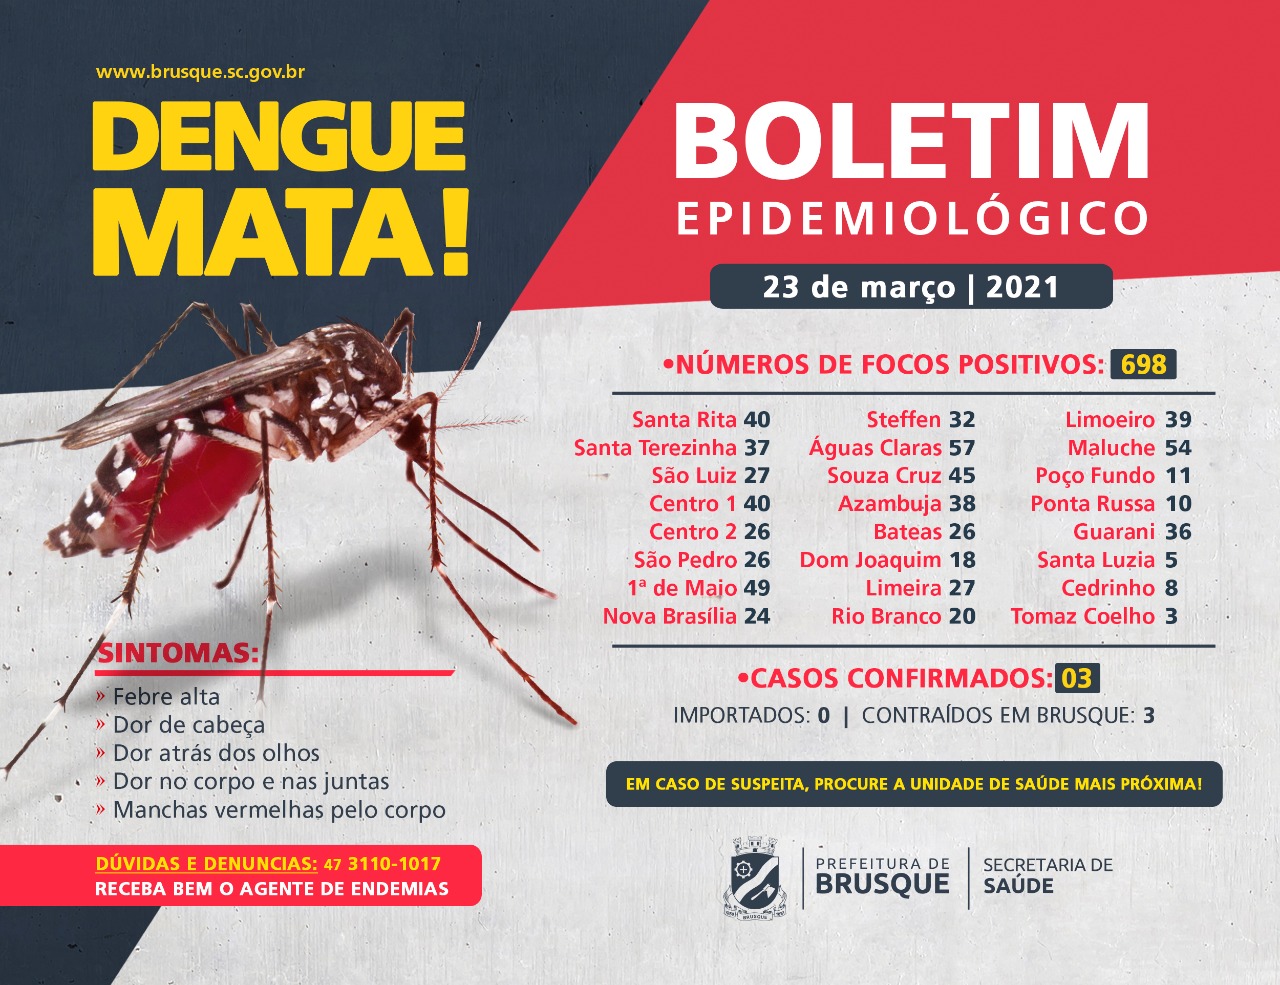 Confira o boletim epidemiológico da dengue desta terça-feira (23)